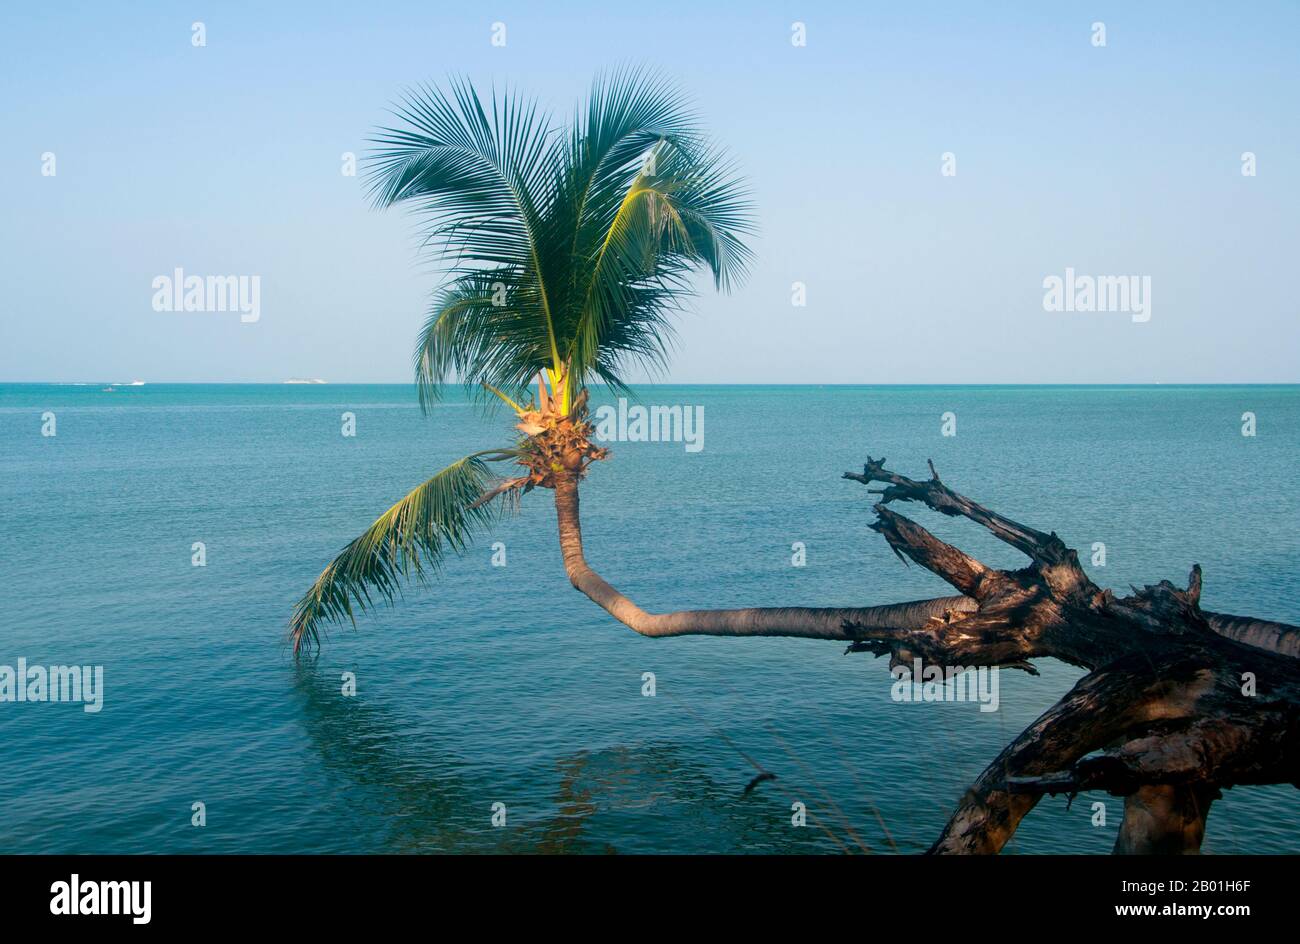 Thailandia: Una palma da cocco cresce sul mare ad Ao Wok Tum, Ko Phangan. Ko Phangan si trova a 15 chilometri (9,5 miglia) a nord del suo più famoso vicino Ko Samui, e, a 168 kmq (65 miglia quadrate) circa due terzi delle sue dimensioni. L'isola ha la stessa combinazione tropicale di spiagge bianche e sabbiose, barriere coralline accessibili e ambienti interni aspri e incontaminati. Un tempo frequentato da viaggiatori in economia che scappano dal più costoso Ko Samui, oggi si sta lentamente spostando più di alto livello. L'isola rimane molto meno sviluppata per il turismo internazionale rispetto a Ko Samui, in parte a causa del suo isolamento e del sistema infrastrutturale povero. Foto Stock